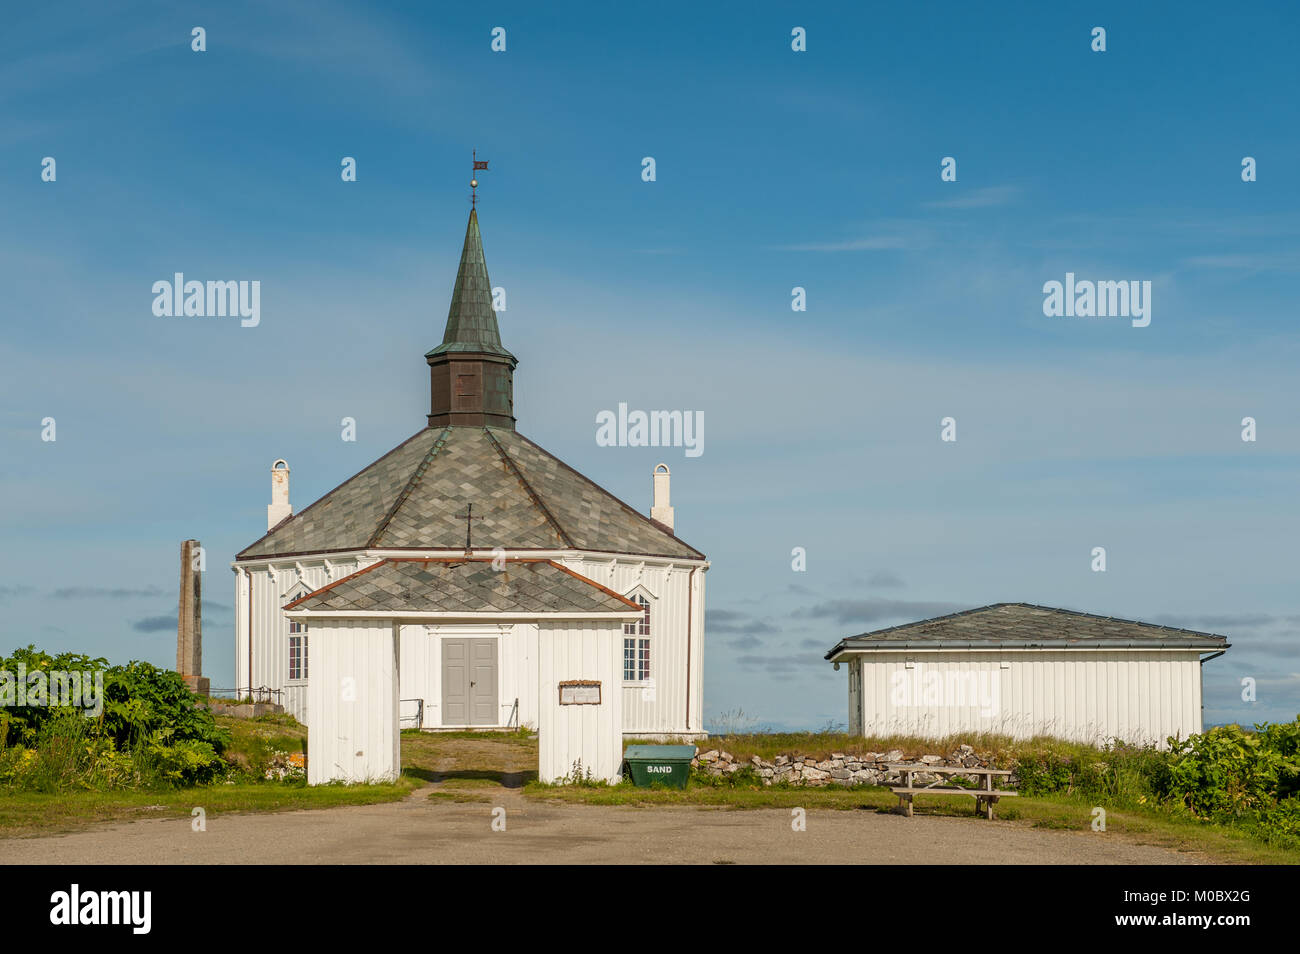 Dverberg église sur l'île d'Andoya dans les Lofoten. Cette église en bois octogonale à partir de 1843 a une capacité de 350. Banque D'Images